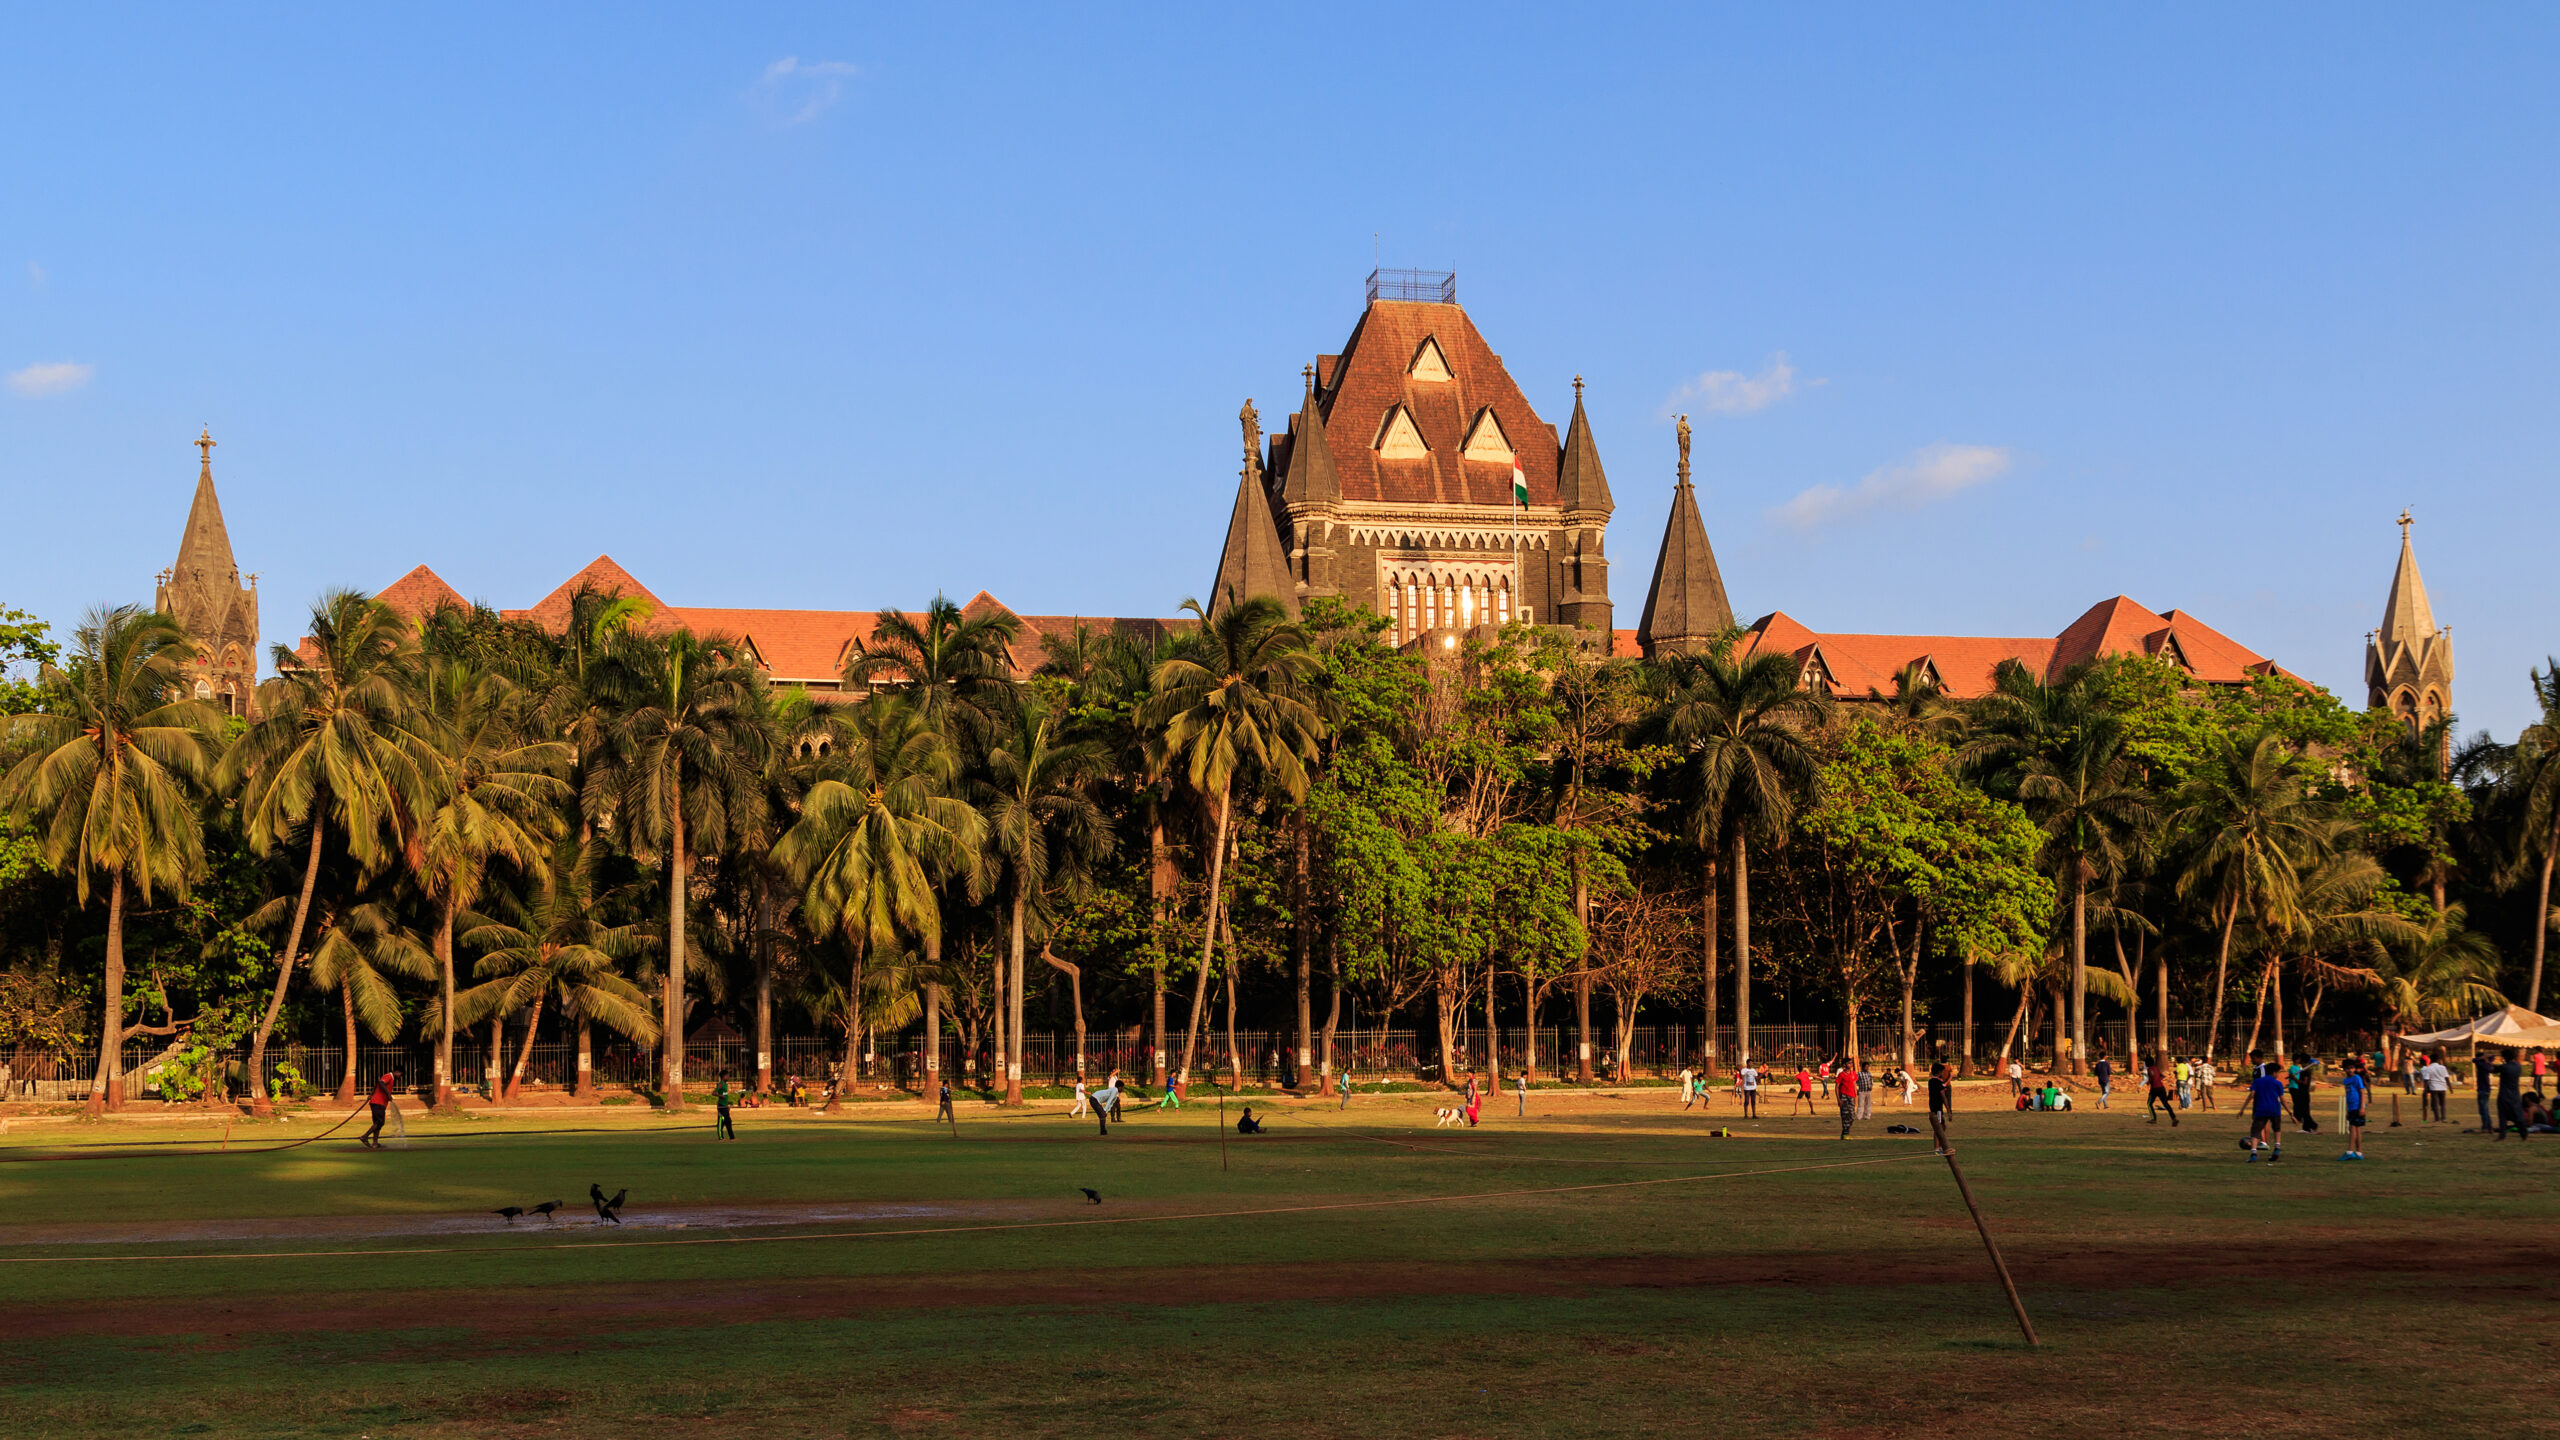 न्यायालय ने महाराष्ट्र सरकार से बंबई उच्च न्यायालय भवन का तत्काल सुरक्षा ऑडिट कराने को कहा